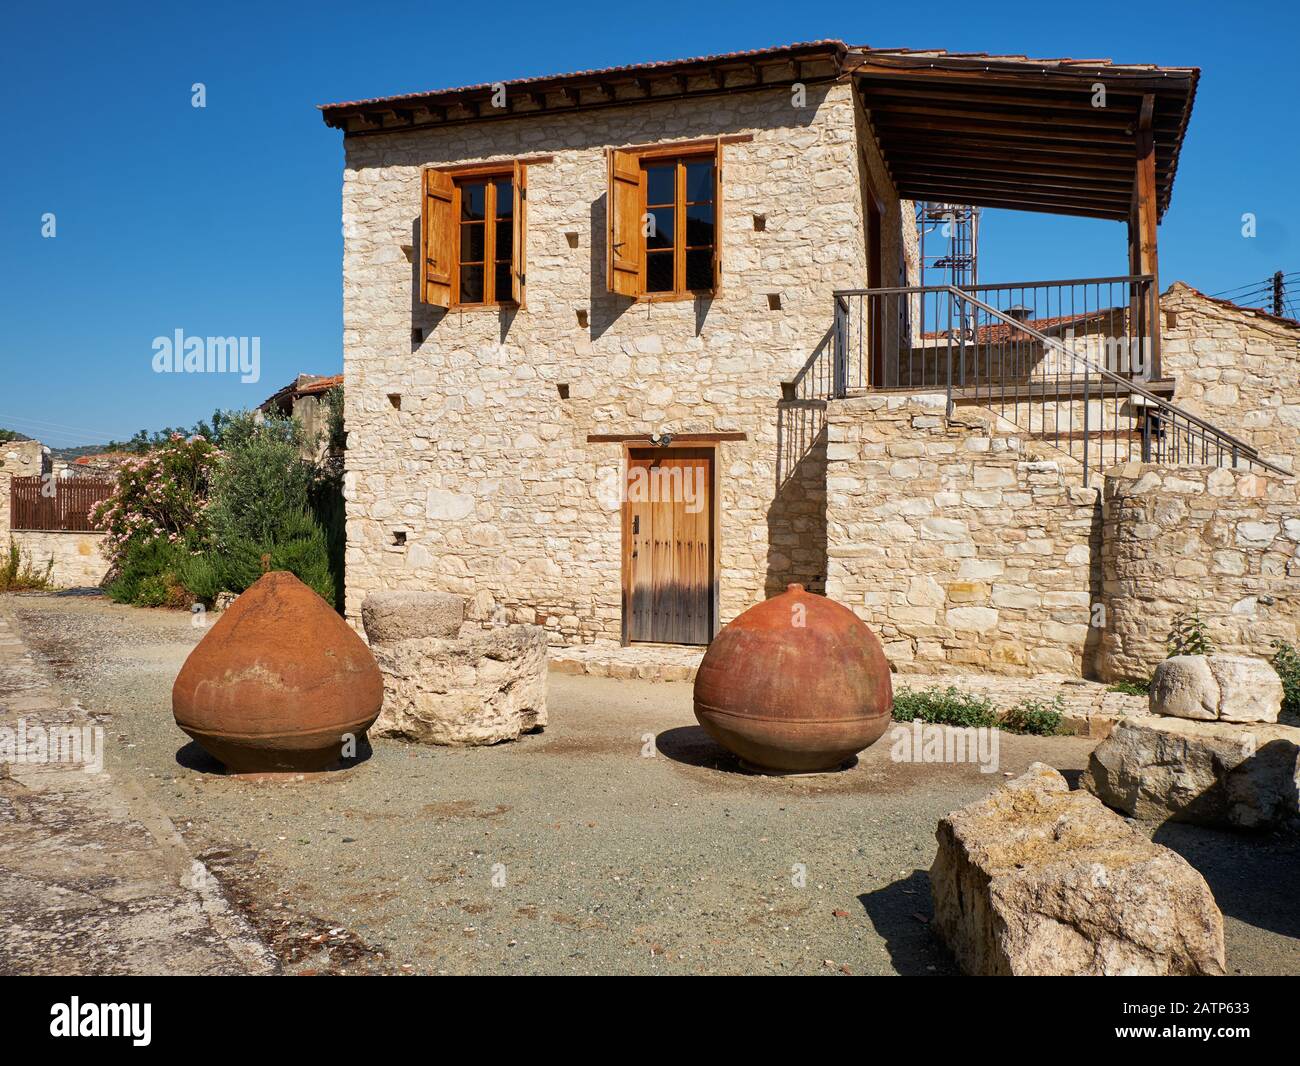 Tradizionale casa in pietra con anfore di vino di terracotta rovesciato nel cortile. Lania villaggio. Limassol. Cipro Foto Stock